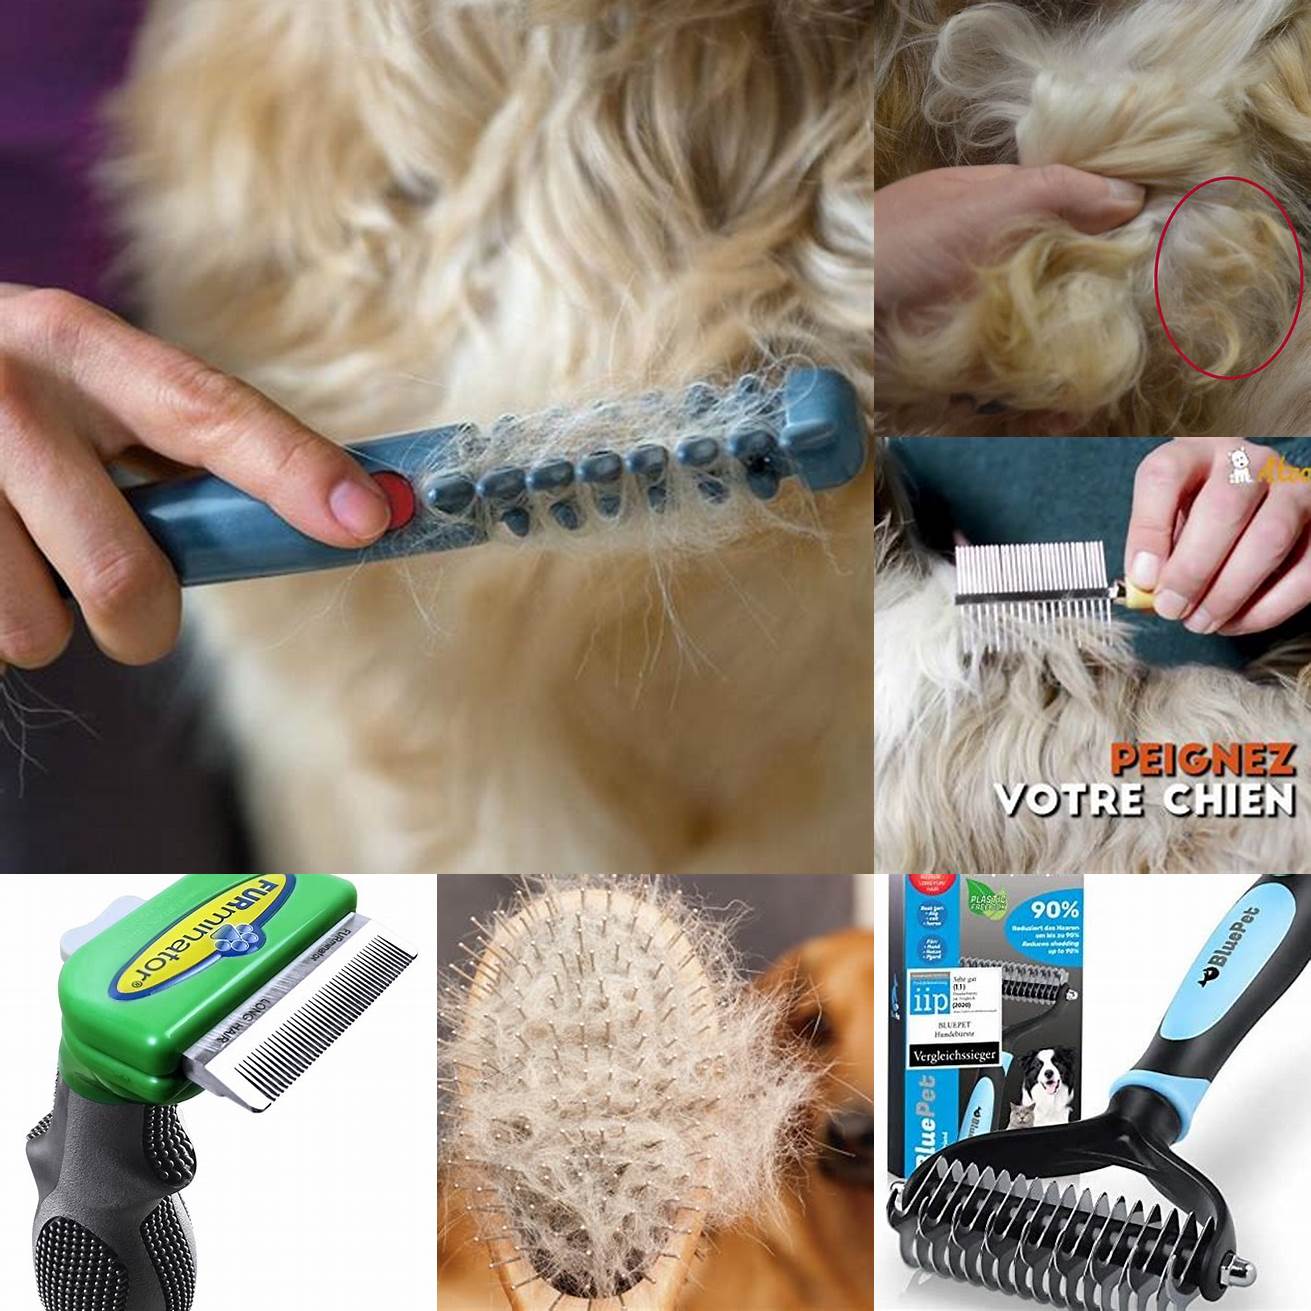 Brossez régulièrement les poils de votre chien pour éviter les nœuds et les emmêlements